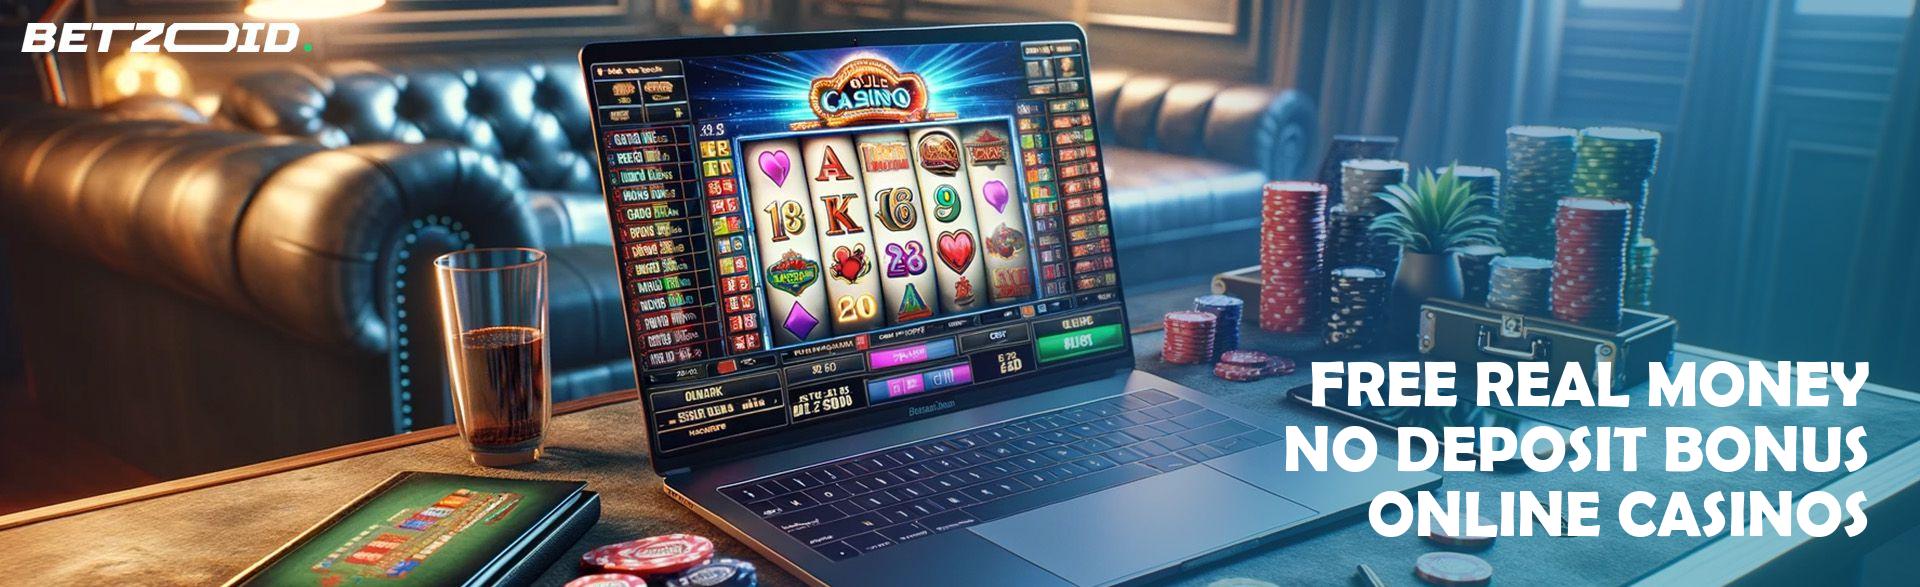 online casinos no deposit bonus australia